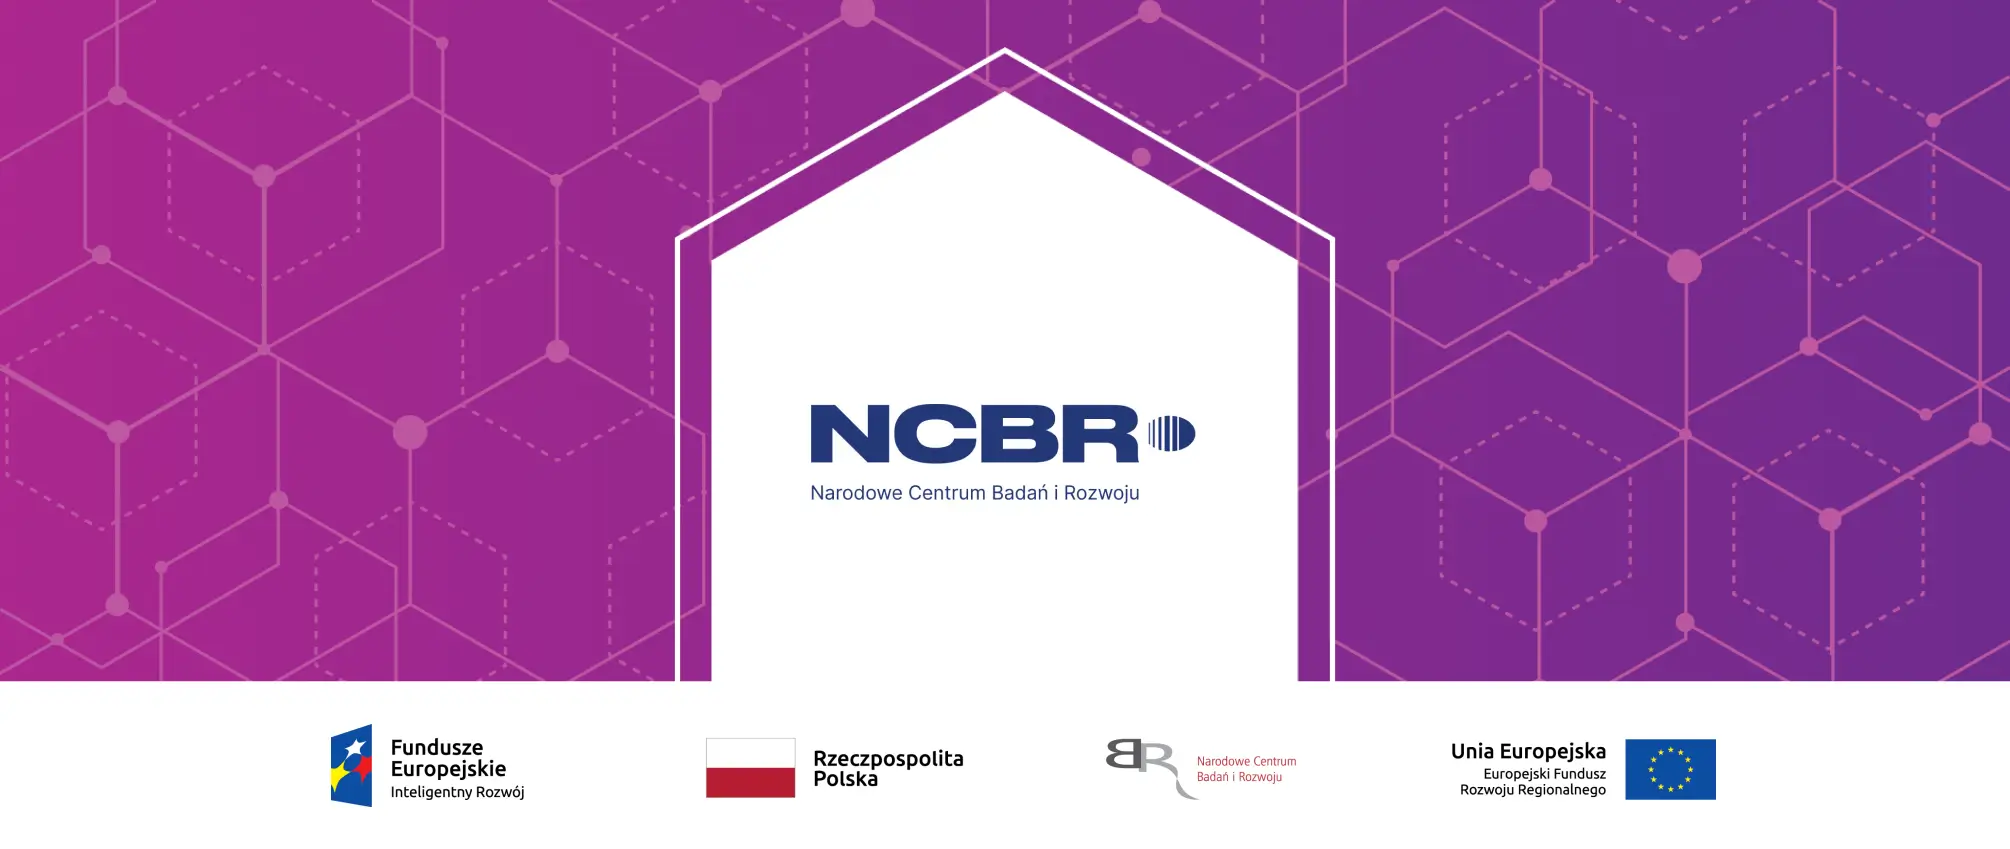 NCBR scientific grant progress report